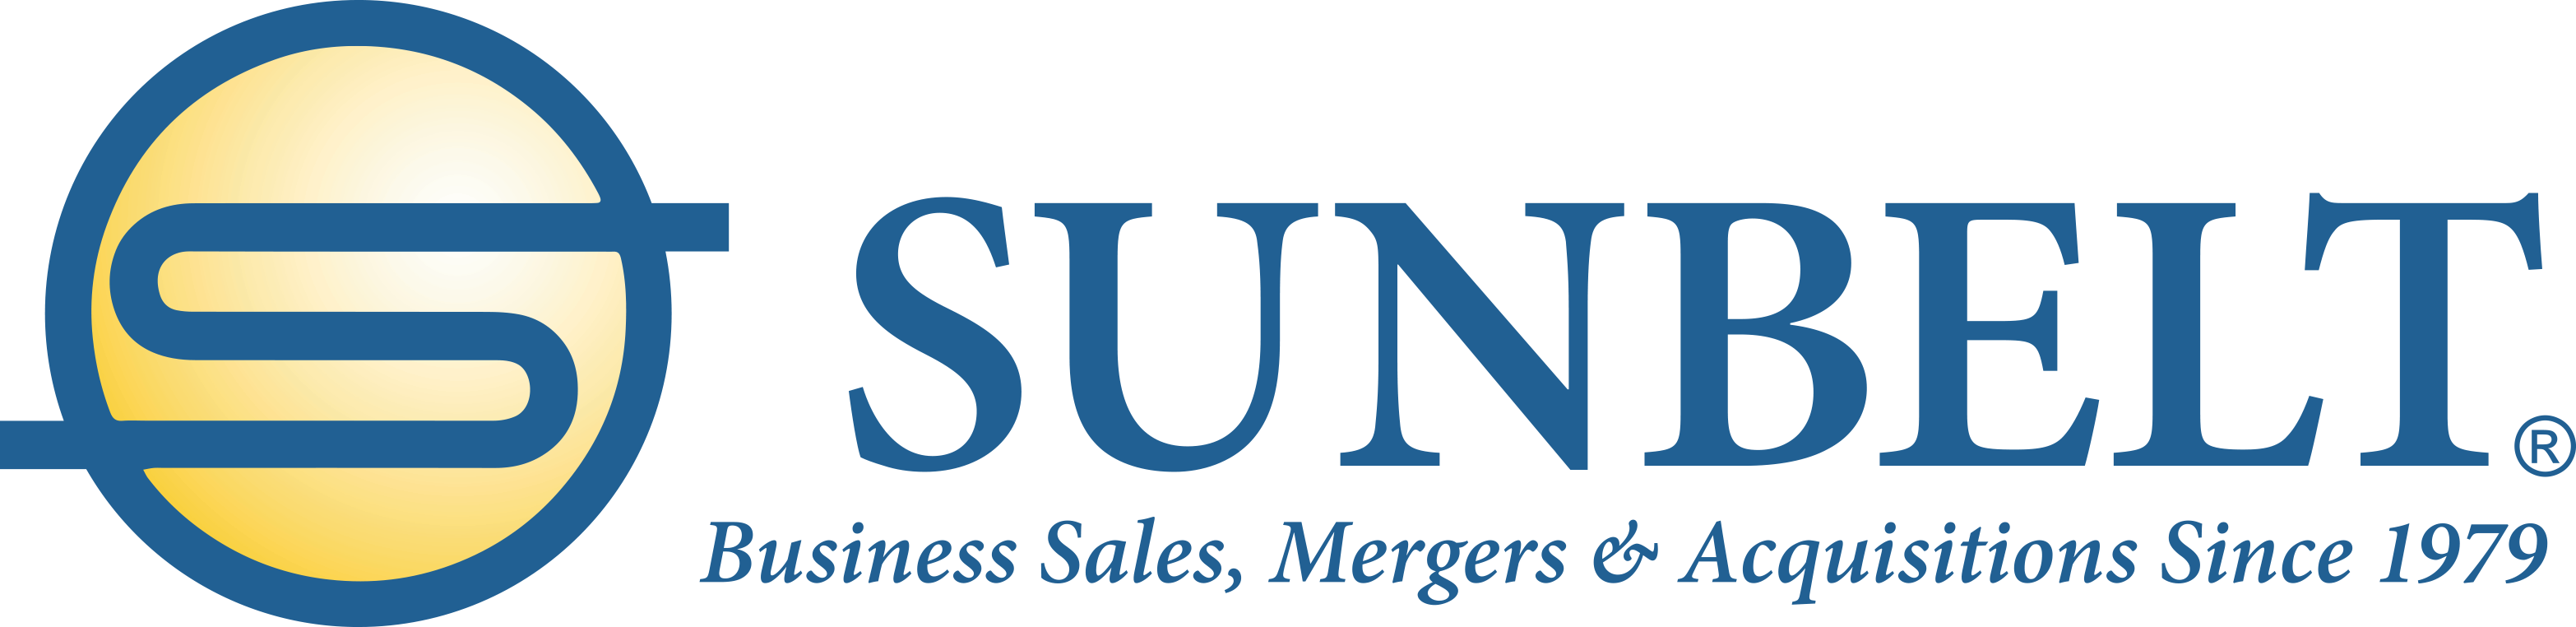 Logo - Sunbelt Business Brokers Logo (3132x762)